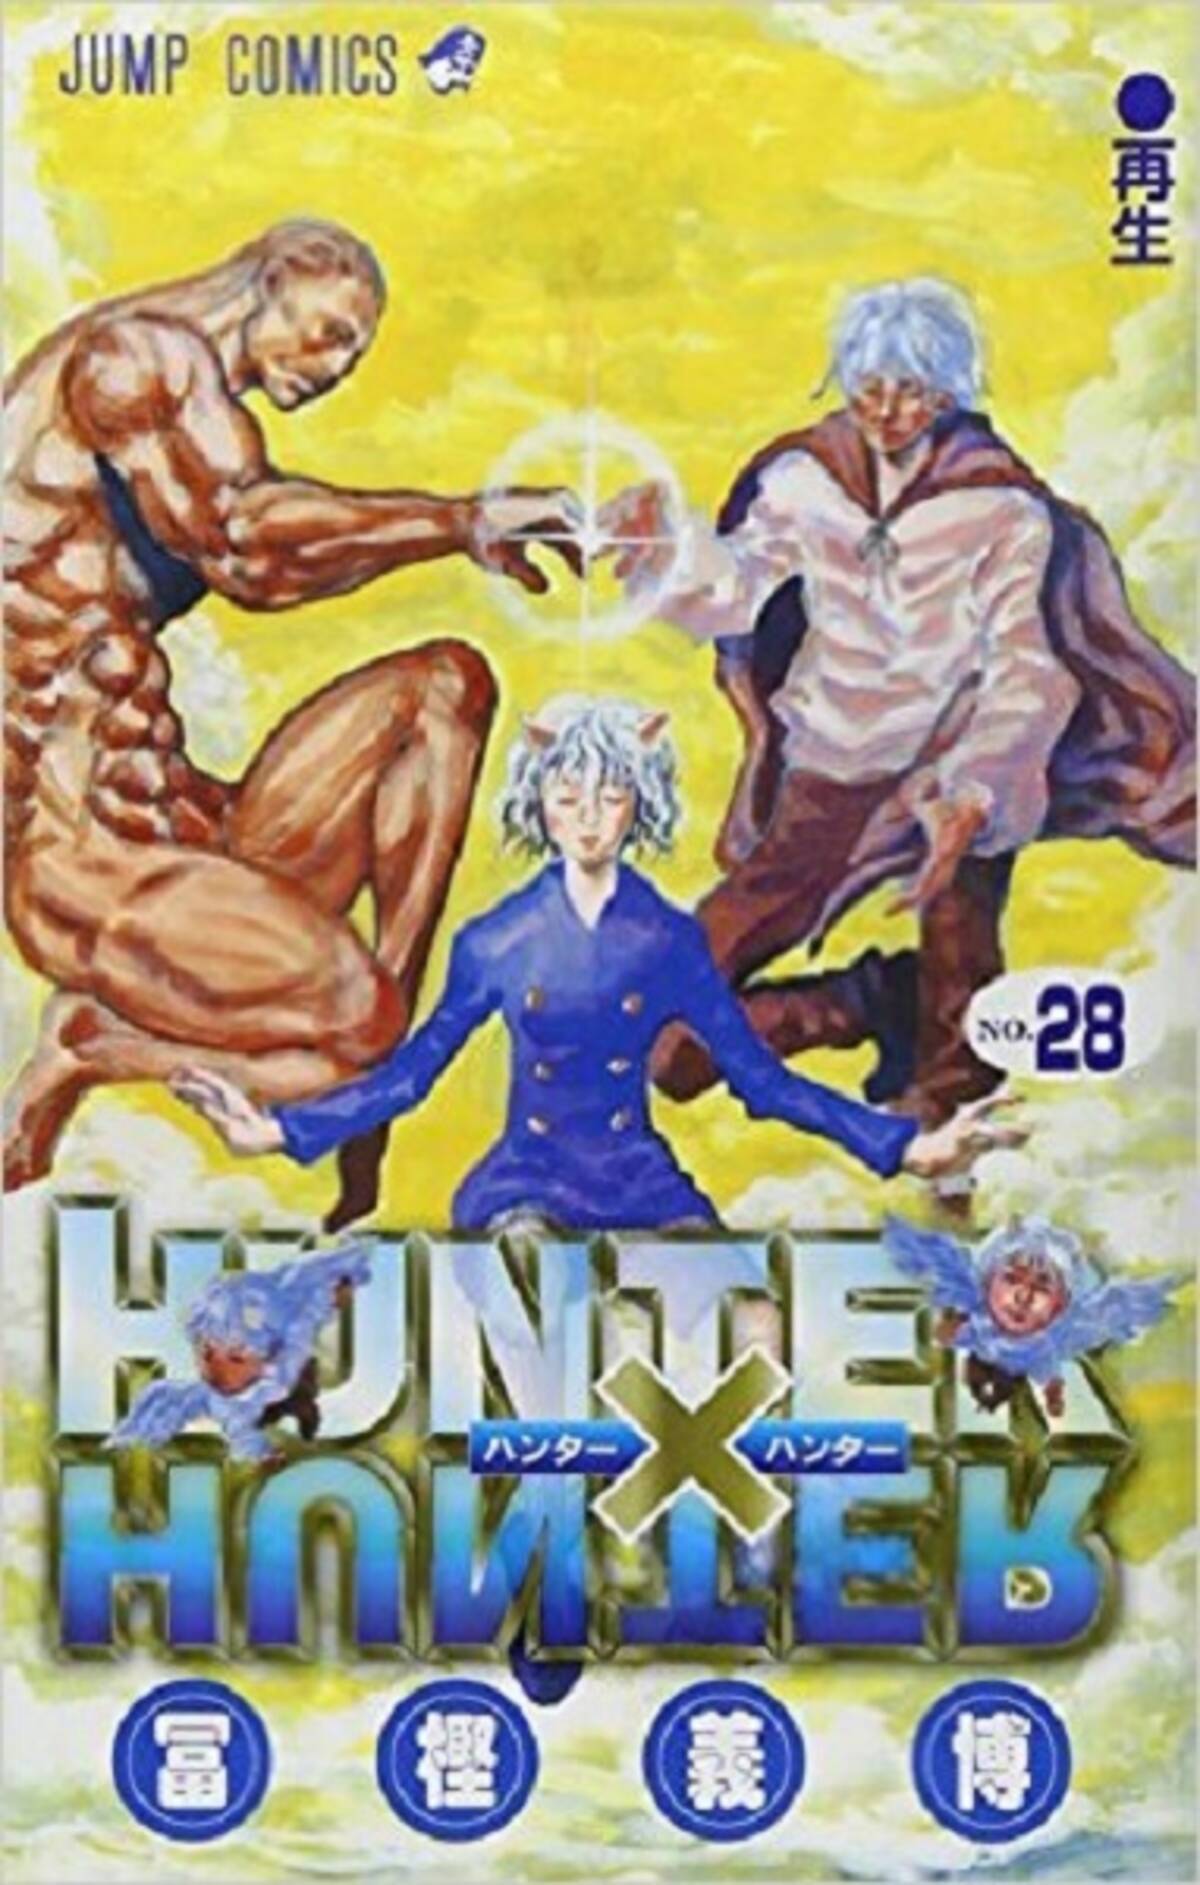 Hunter Hunter 28巻から 冨樫の描くウマそうな食事シーン考察 エキサイトニュース